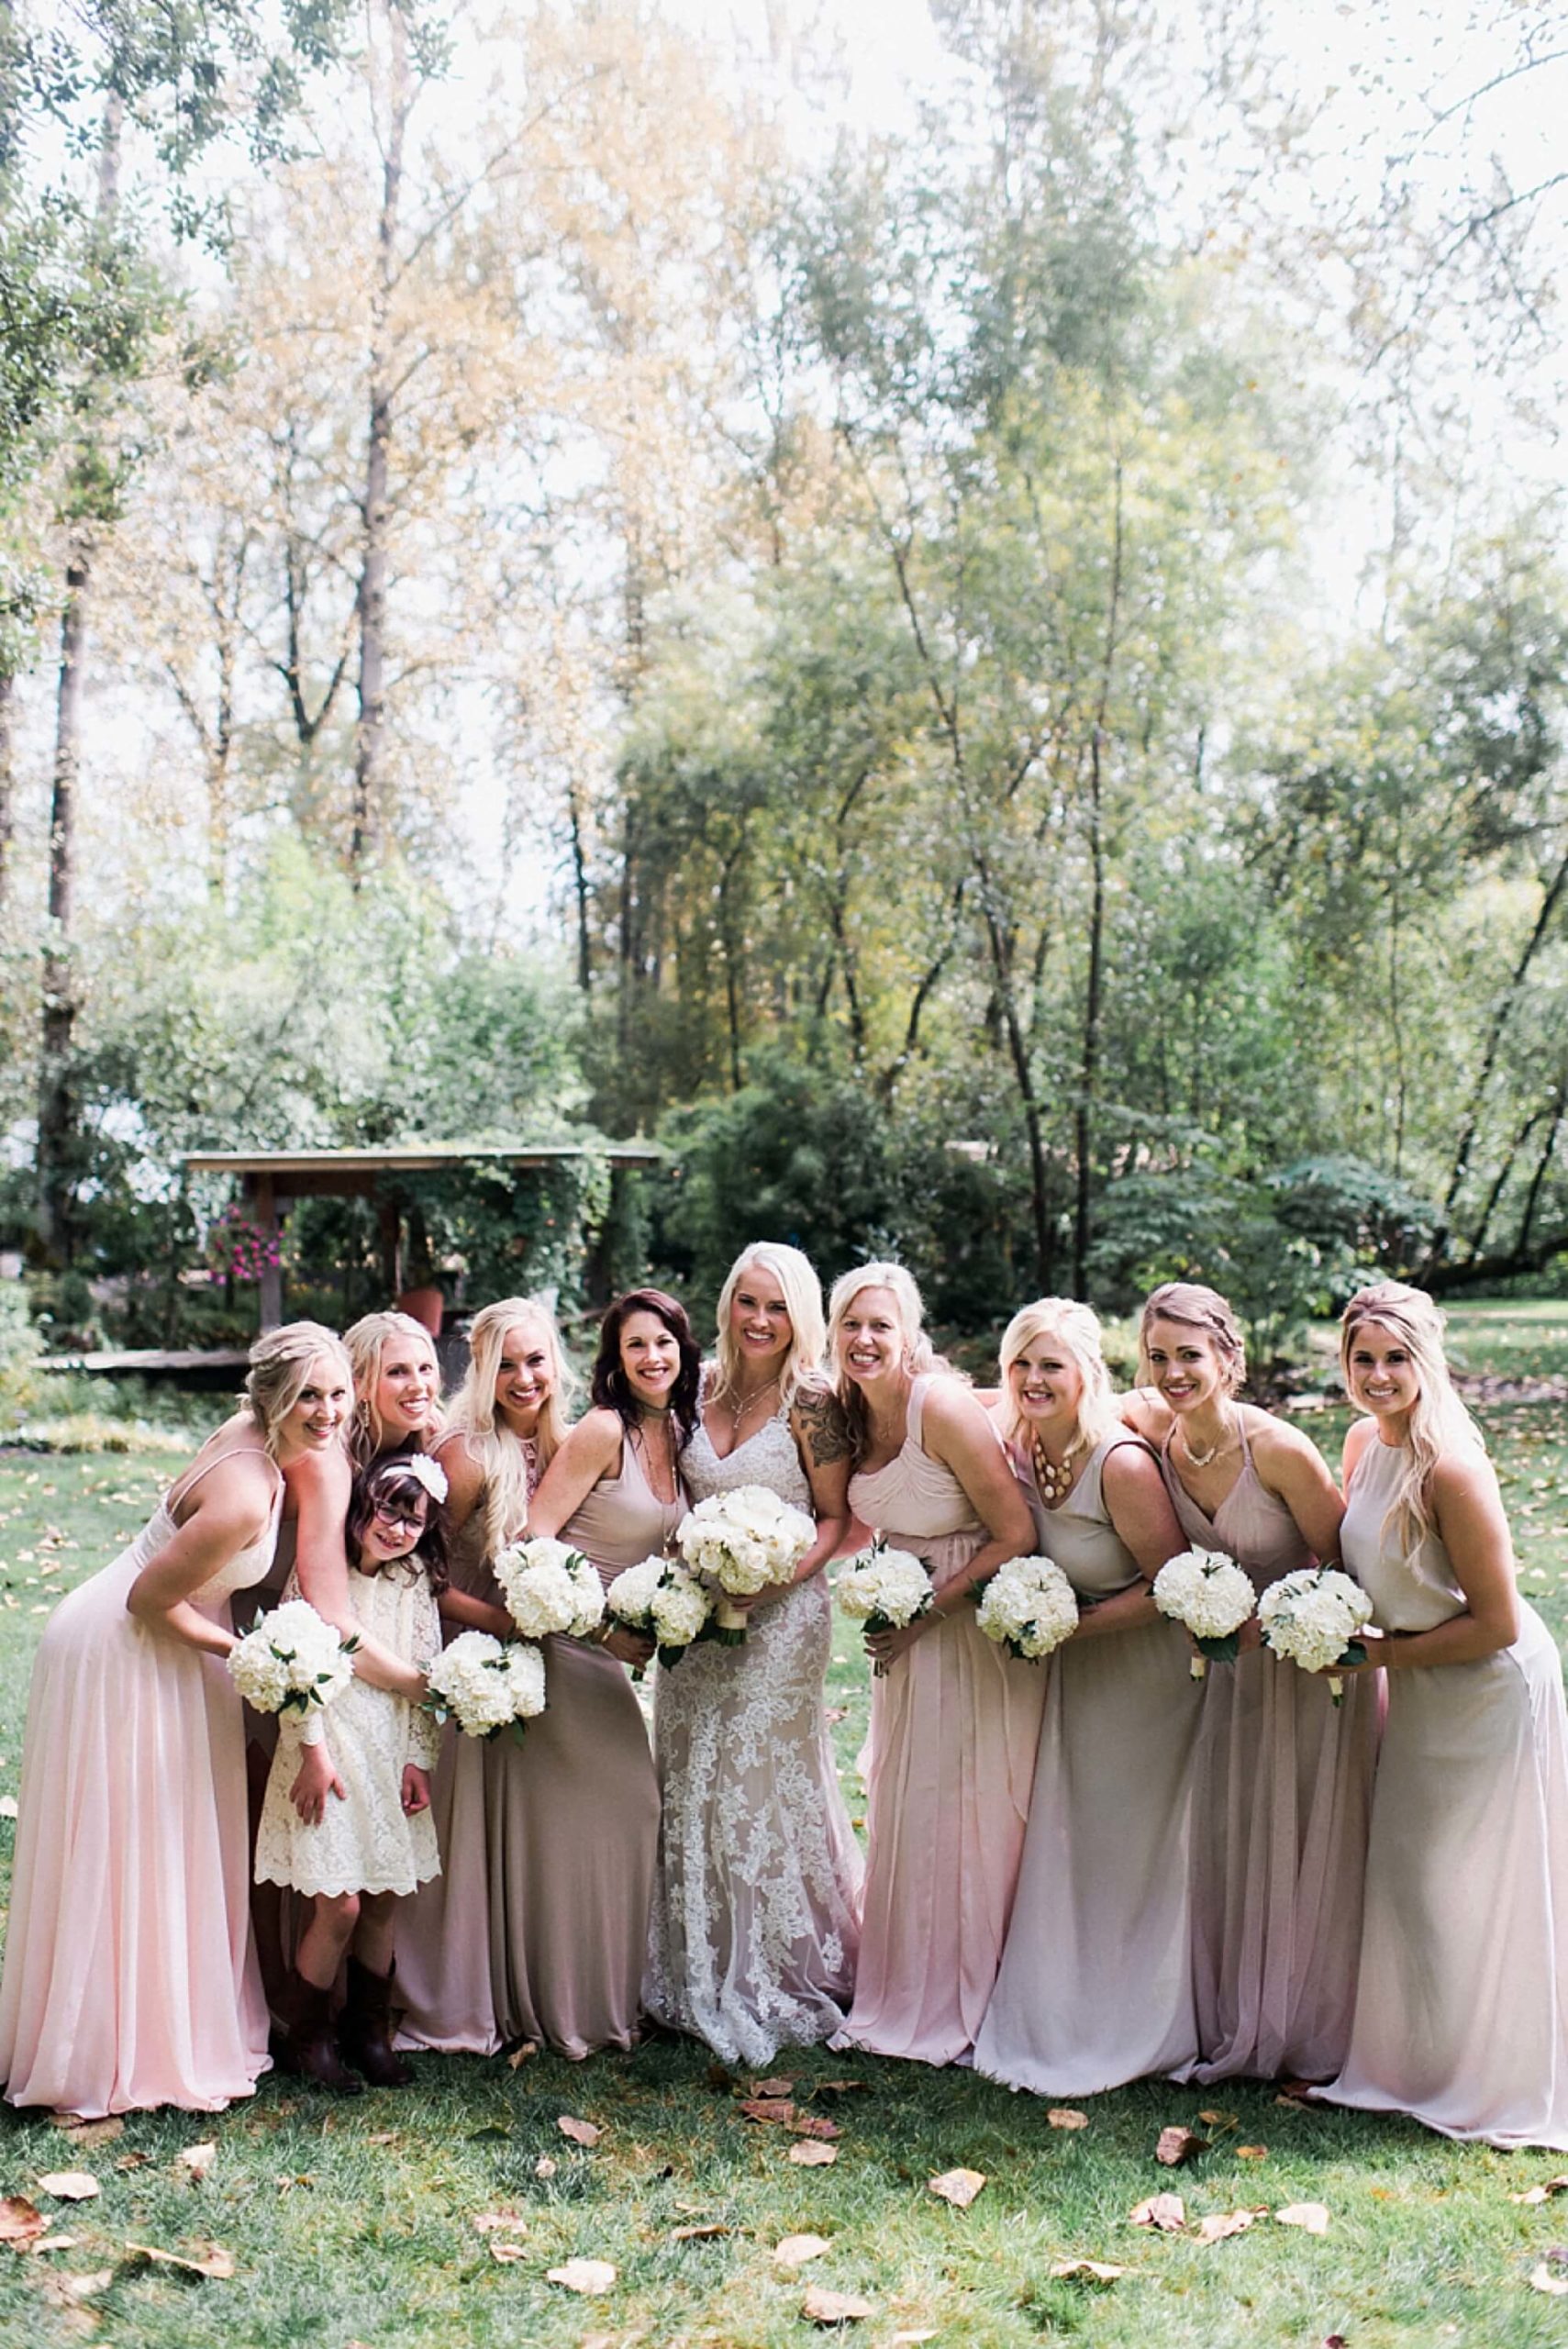 Maroni Meadows bride and bridesmaids